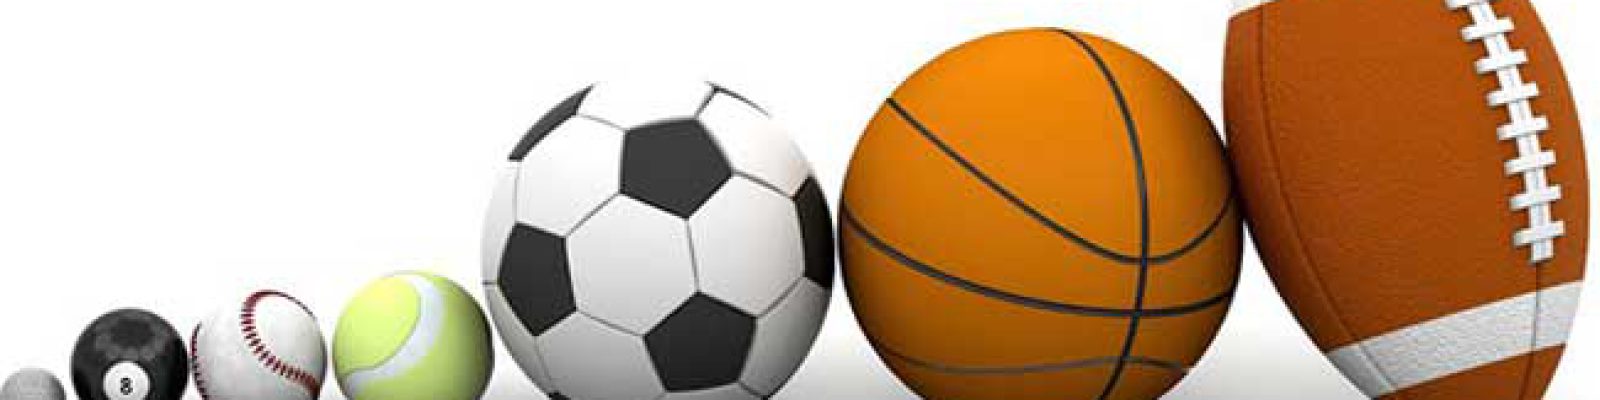 بررسی تاریخچه انواع توپ های ورزشی